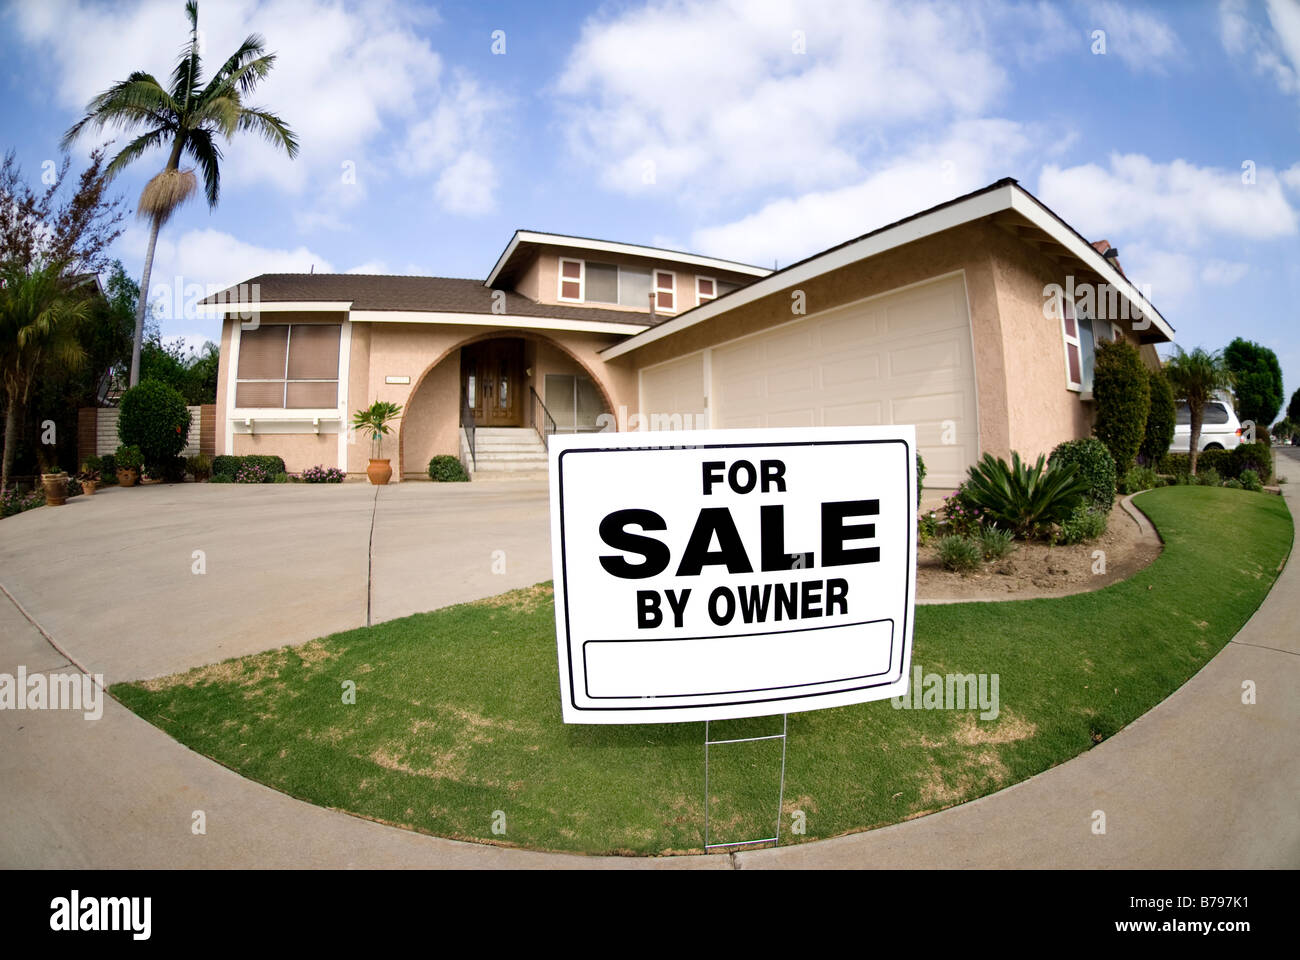 Ein Haus ist zu verkaufen in schwierigen wirtschaftlichen Zeiten aufgestellt Stockfoto